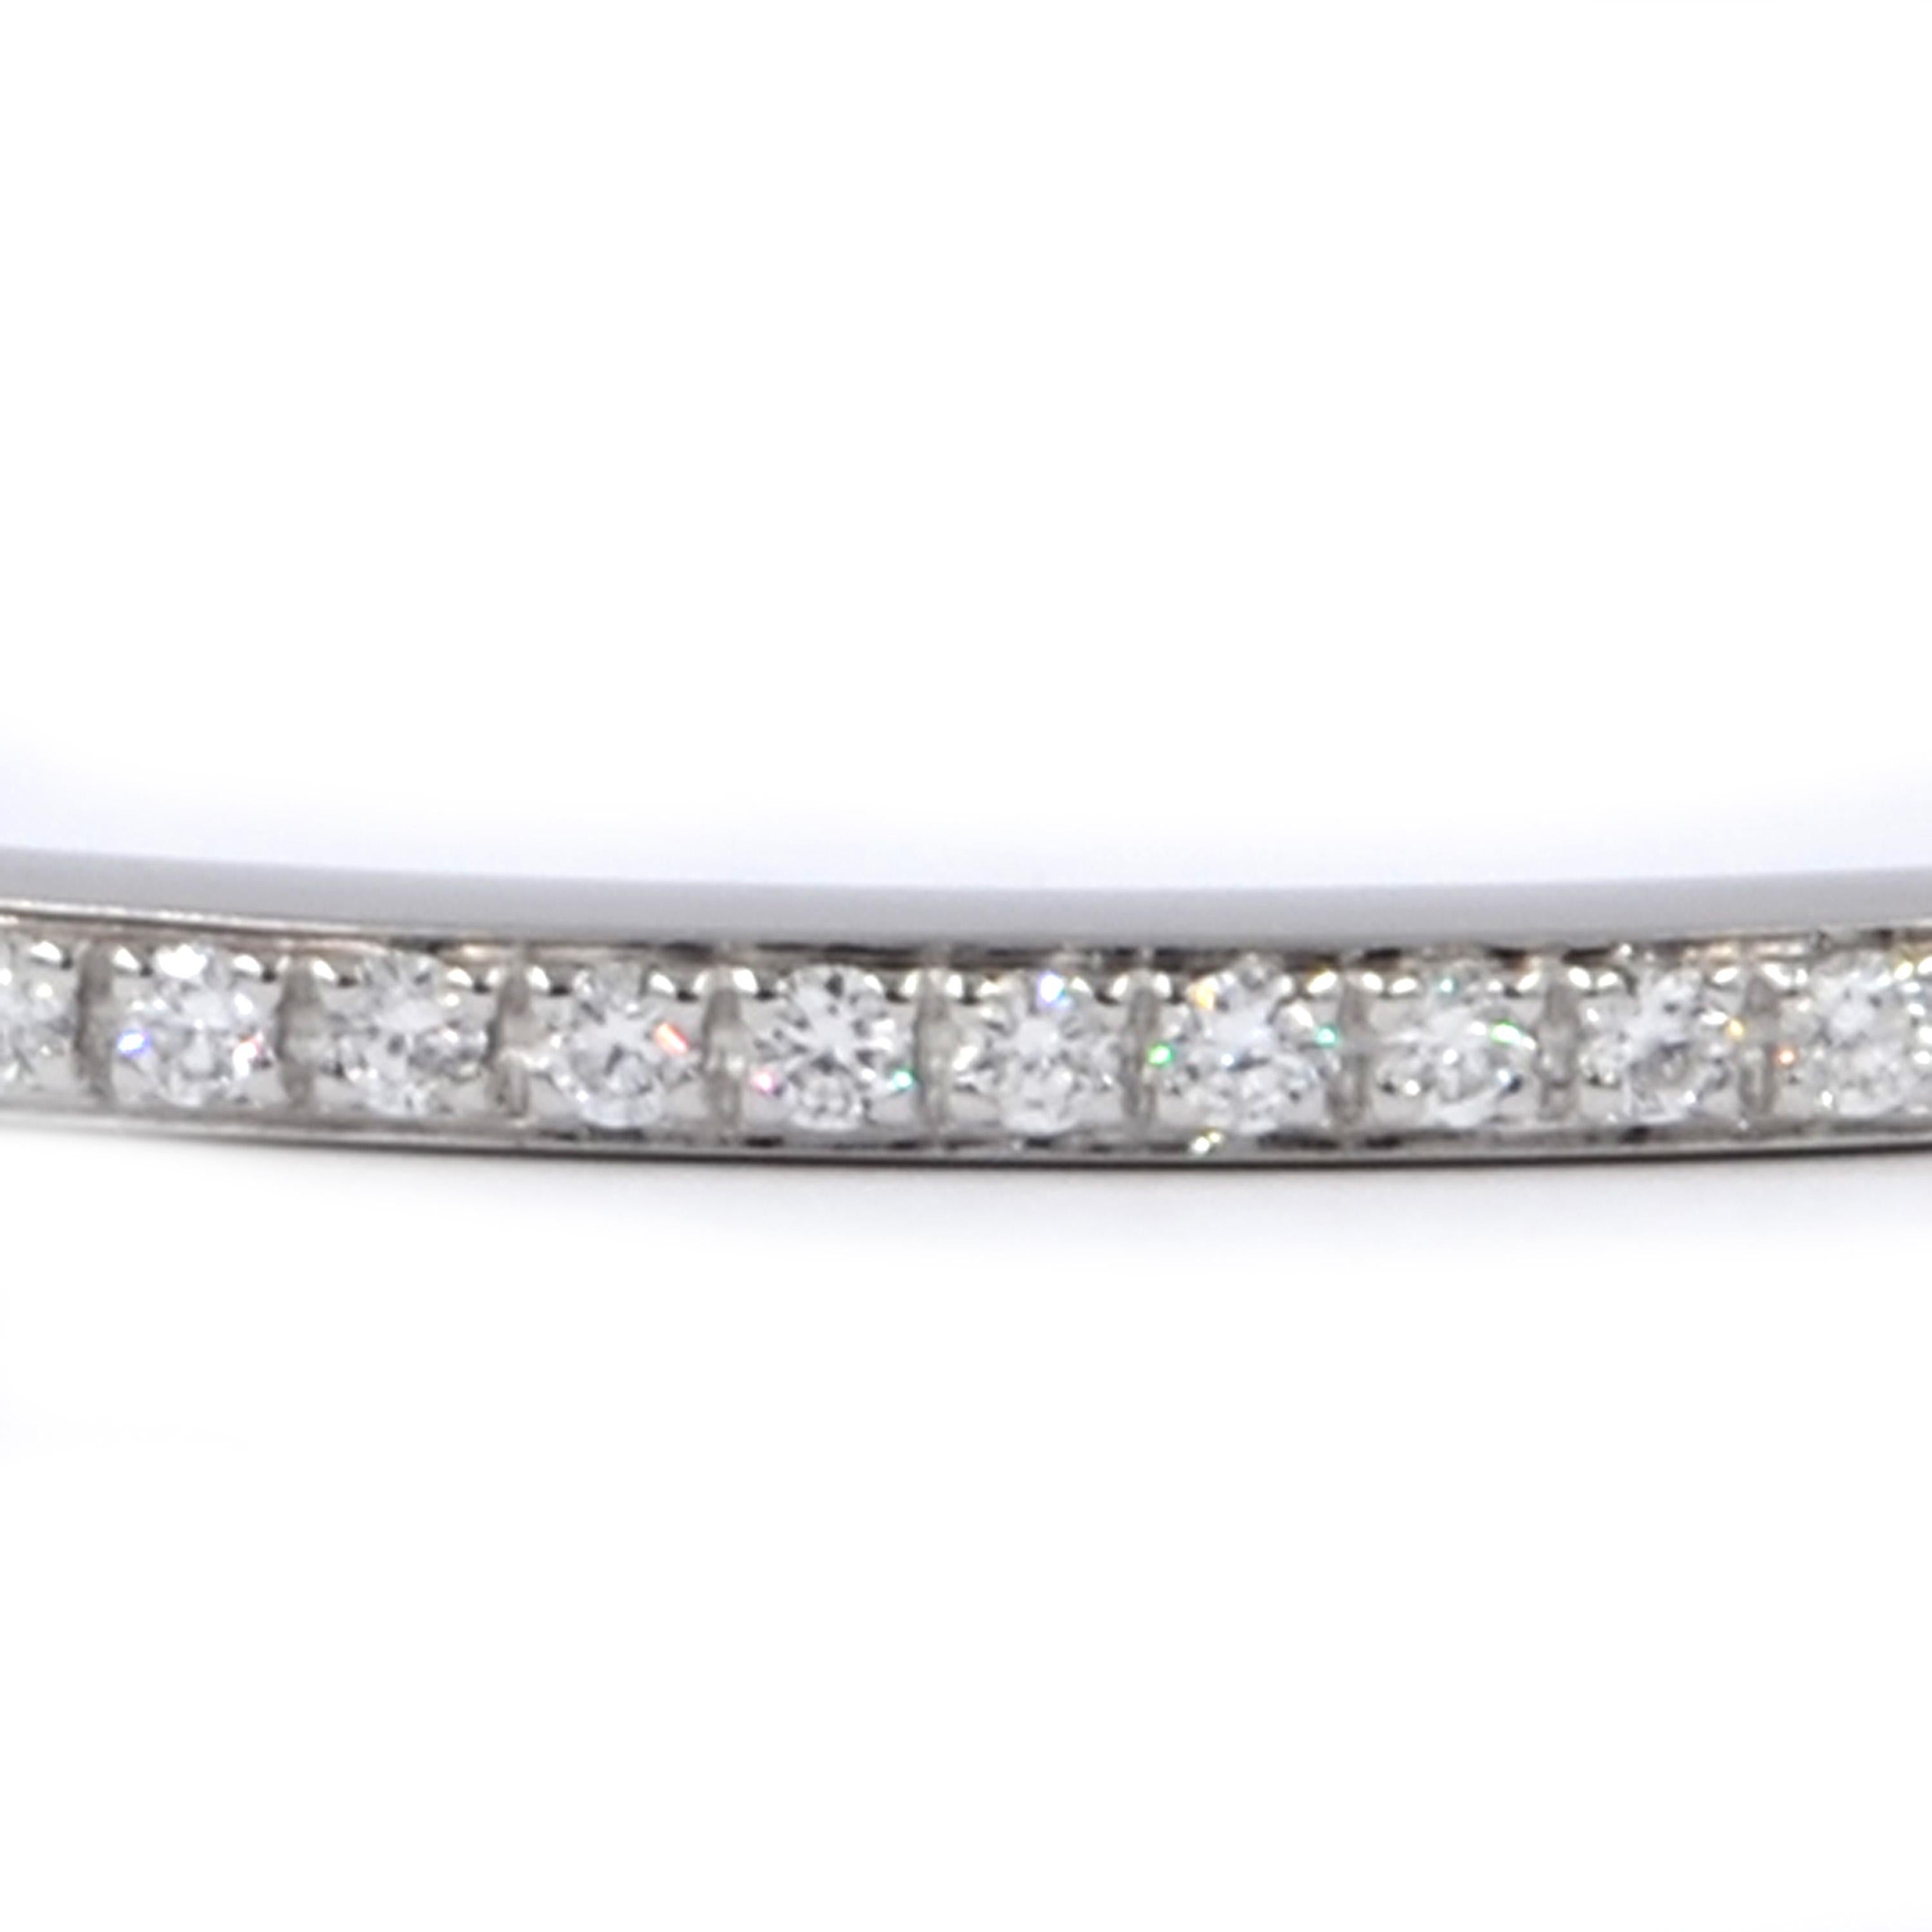 Garavelli 18 Karat White Gold White Diamonds Slip On Bangle Bracelet
PERFECT FOR STACK
slip on bracelet diameter mm 65 
thickness mm.4
GOLD gr :16.50
WHITE DIAMONDS   ct : 2.52
 